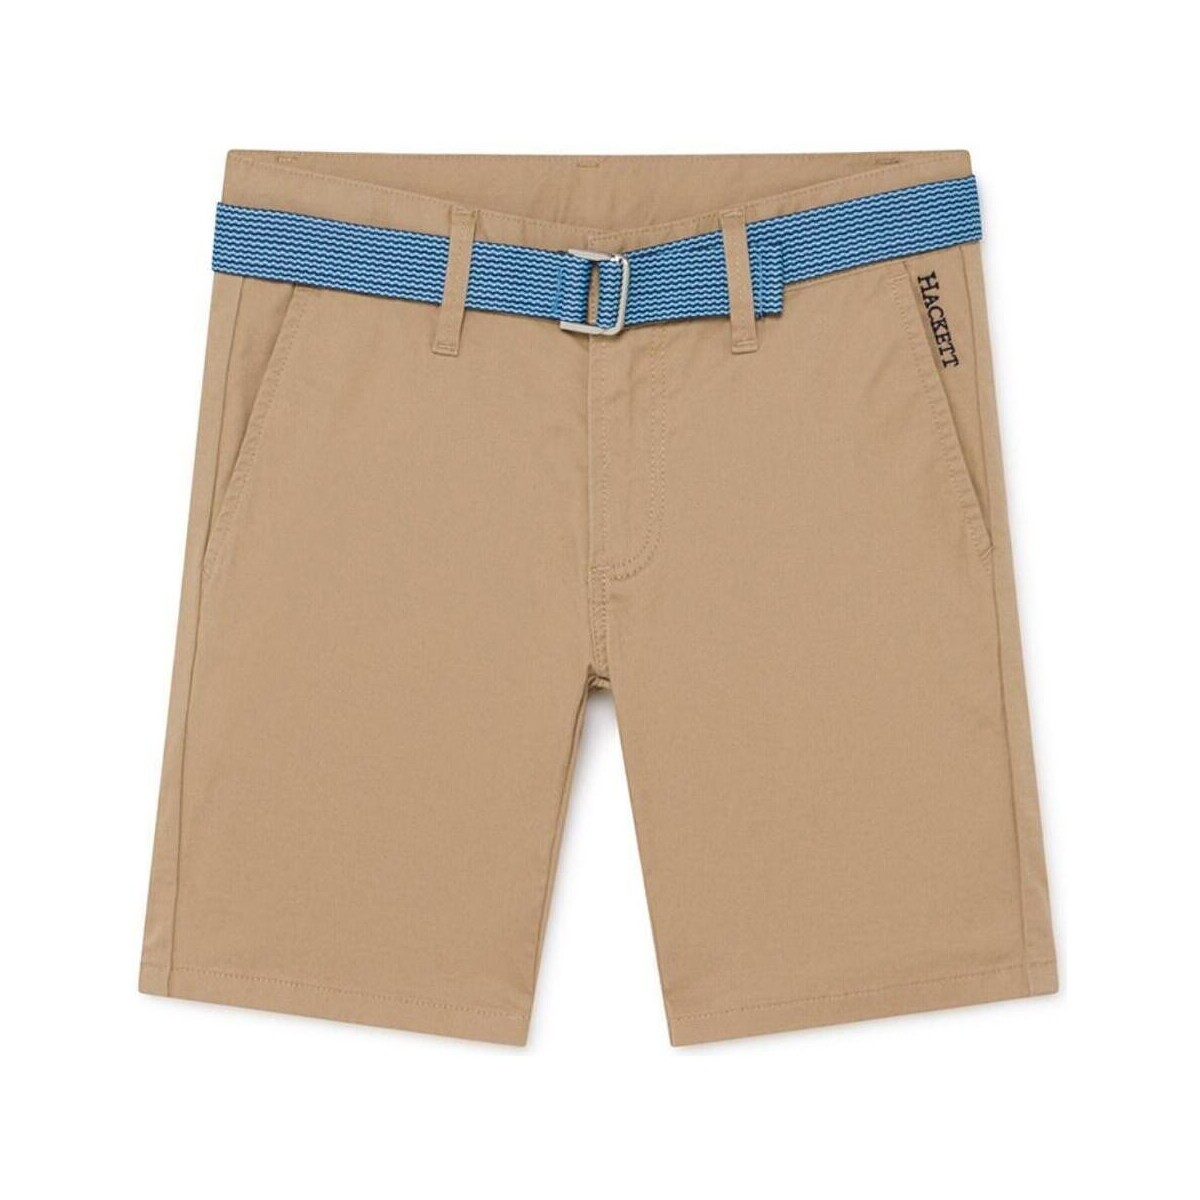 Textil Rapaz Shorts / Bermudas Hackett  Bege